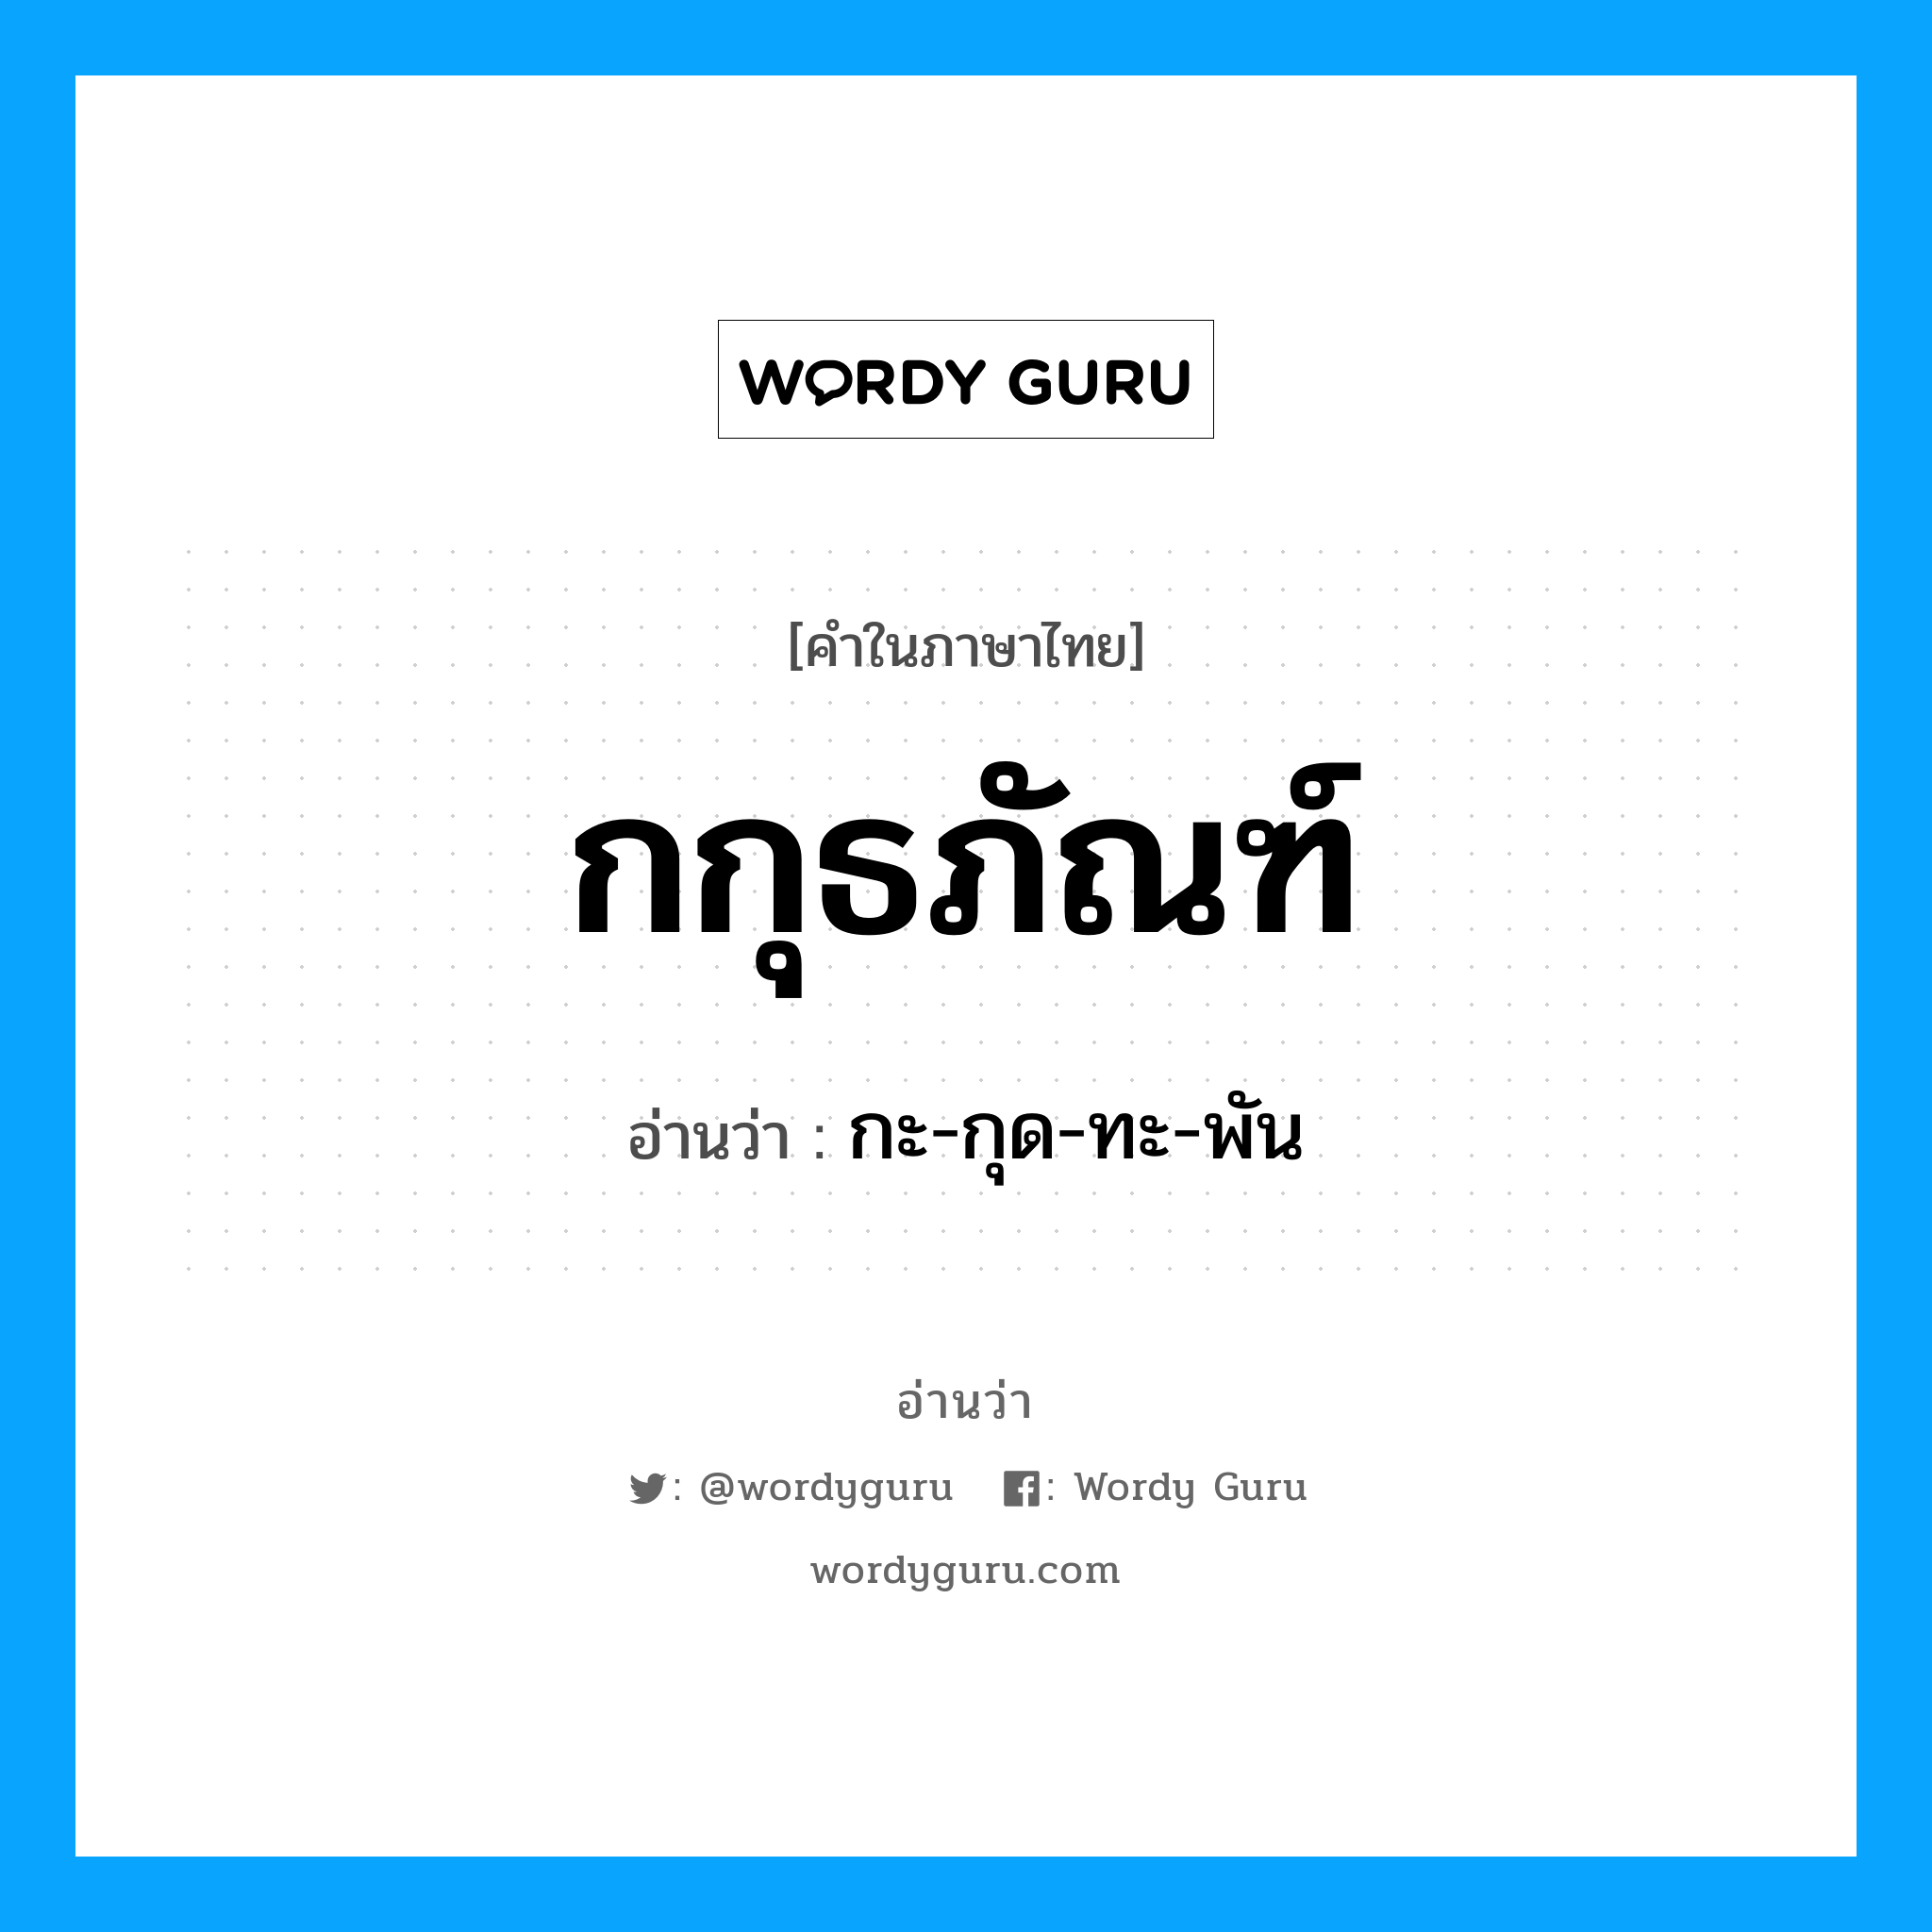 กะ-กุด-ทะ-พัน เป็นคำอ่านของคำไหน?, คำในภาษาไทย กะ-กุด-ทะ-พัน อ่านว่า กกุธภัณฑ์